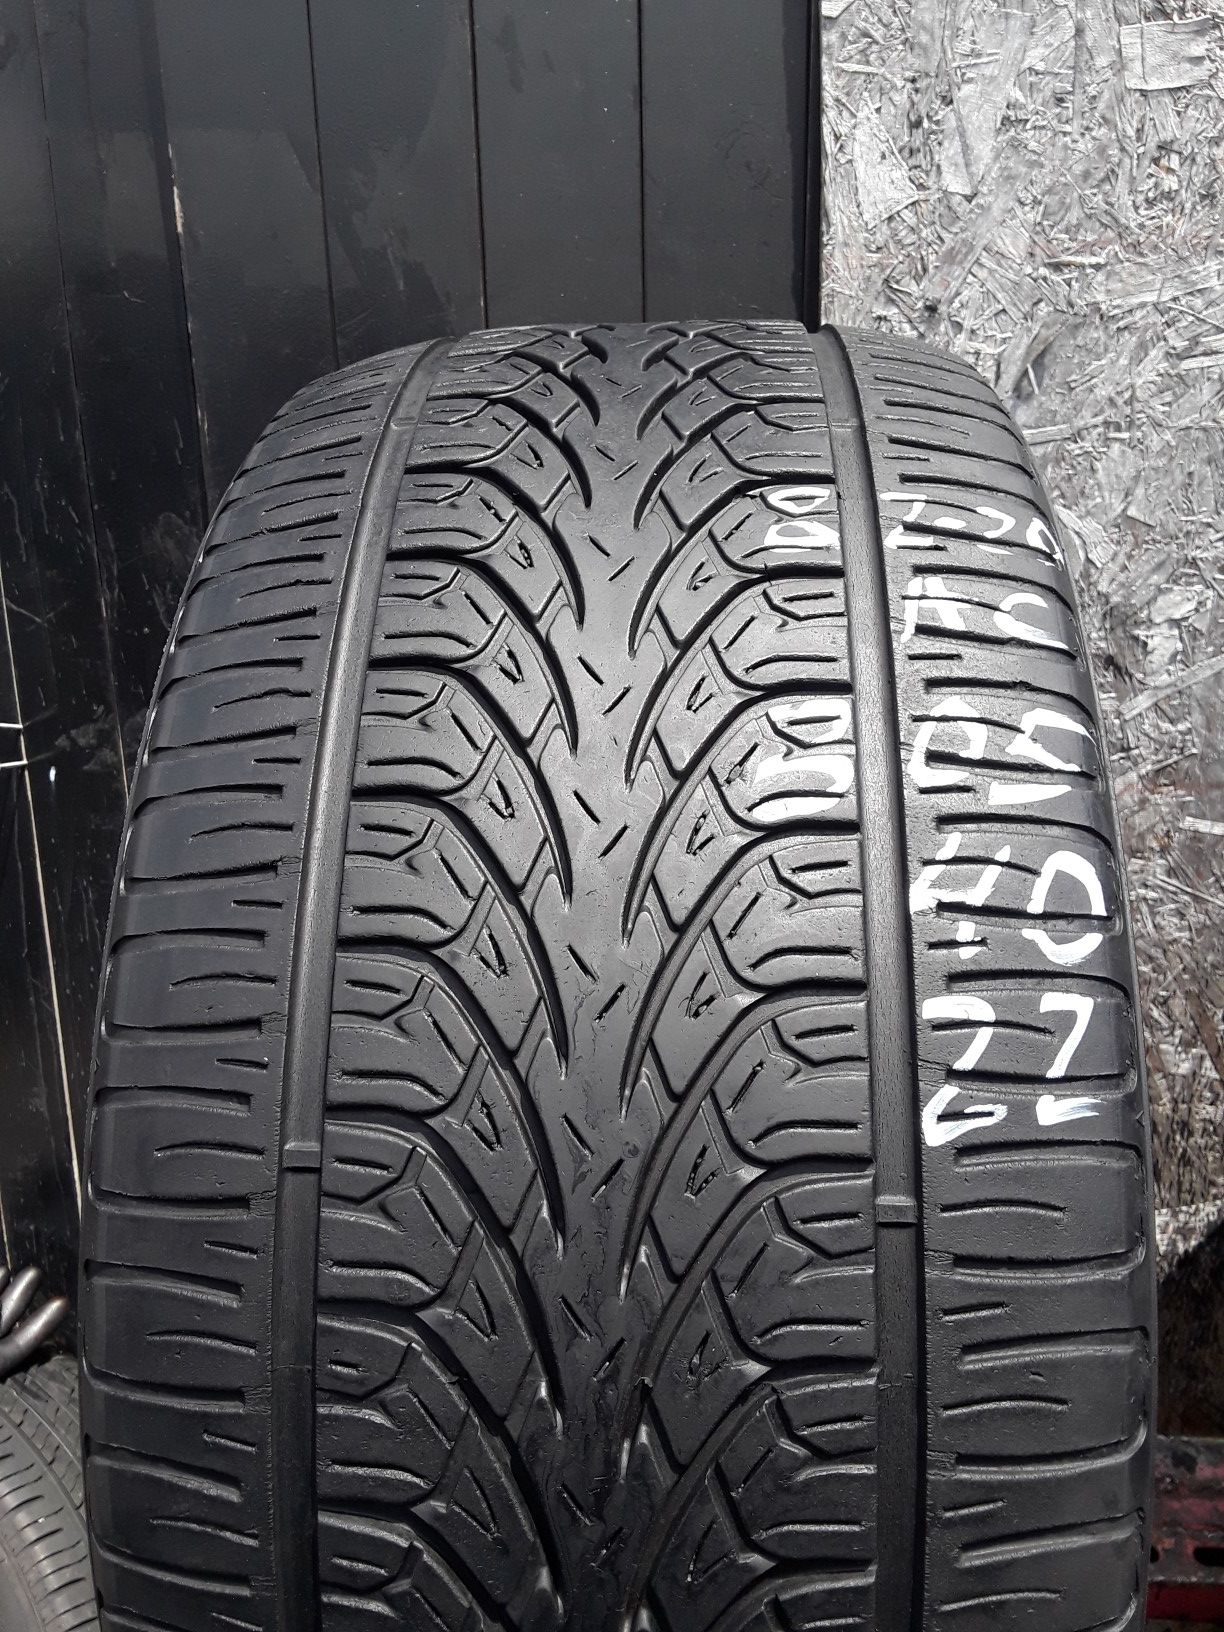 305/40-22 #1 tire